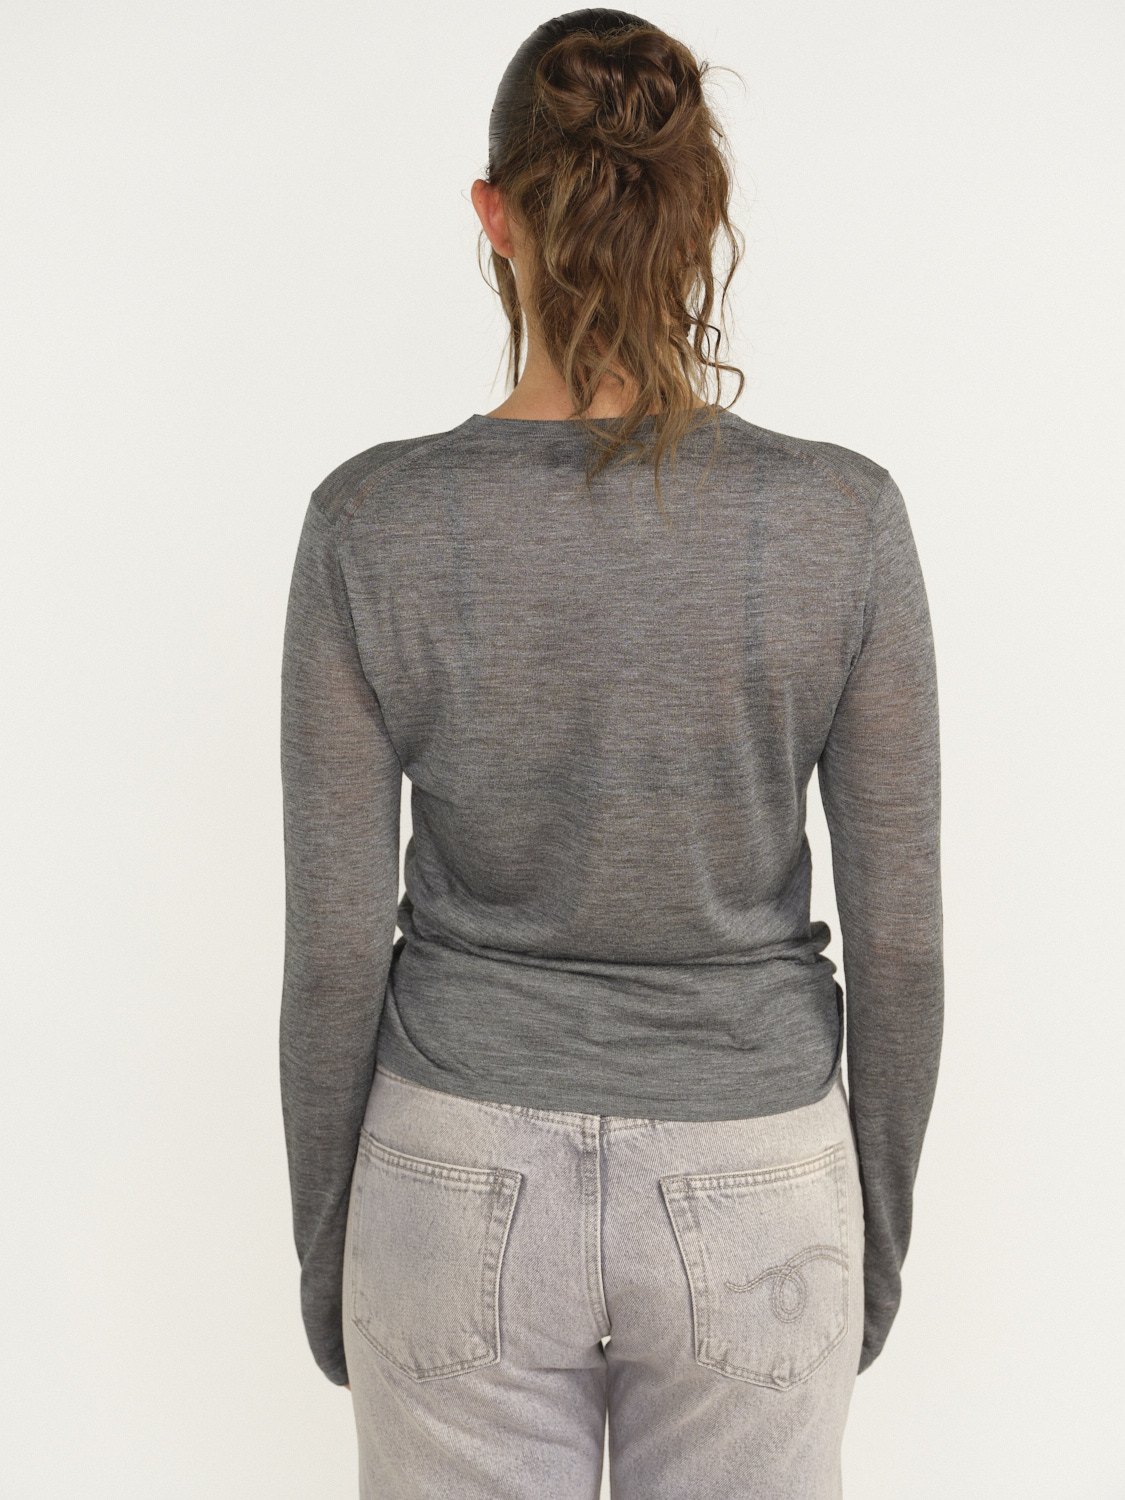 Nili Lotan Candice Sweater - T-shirt manches longues en soie gris L